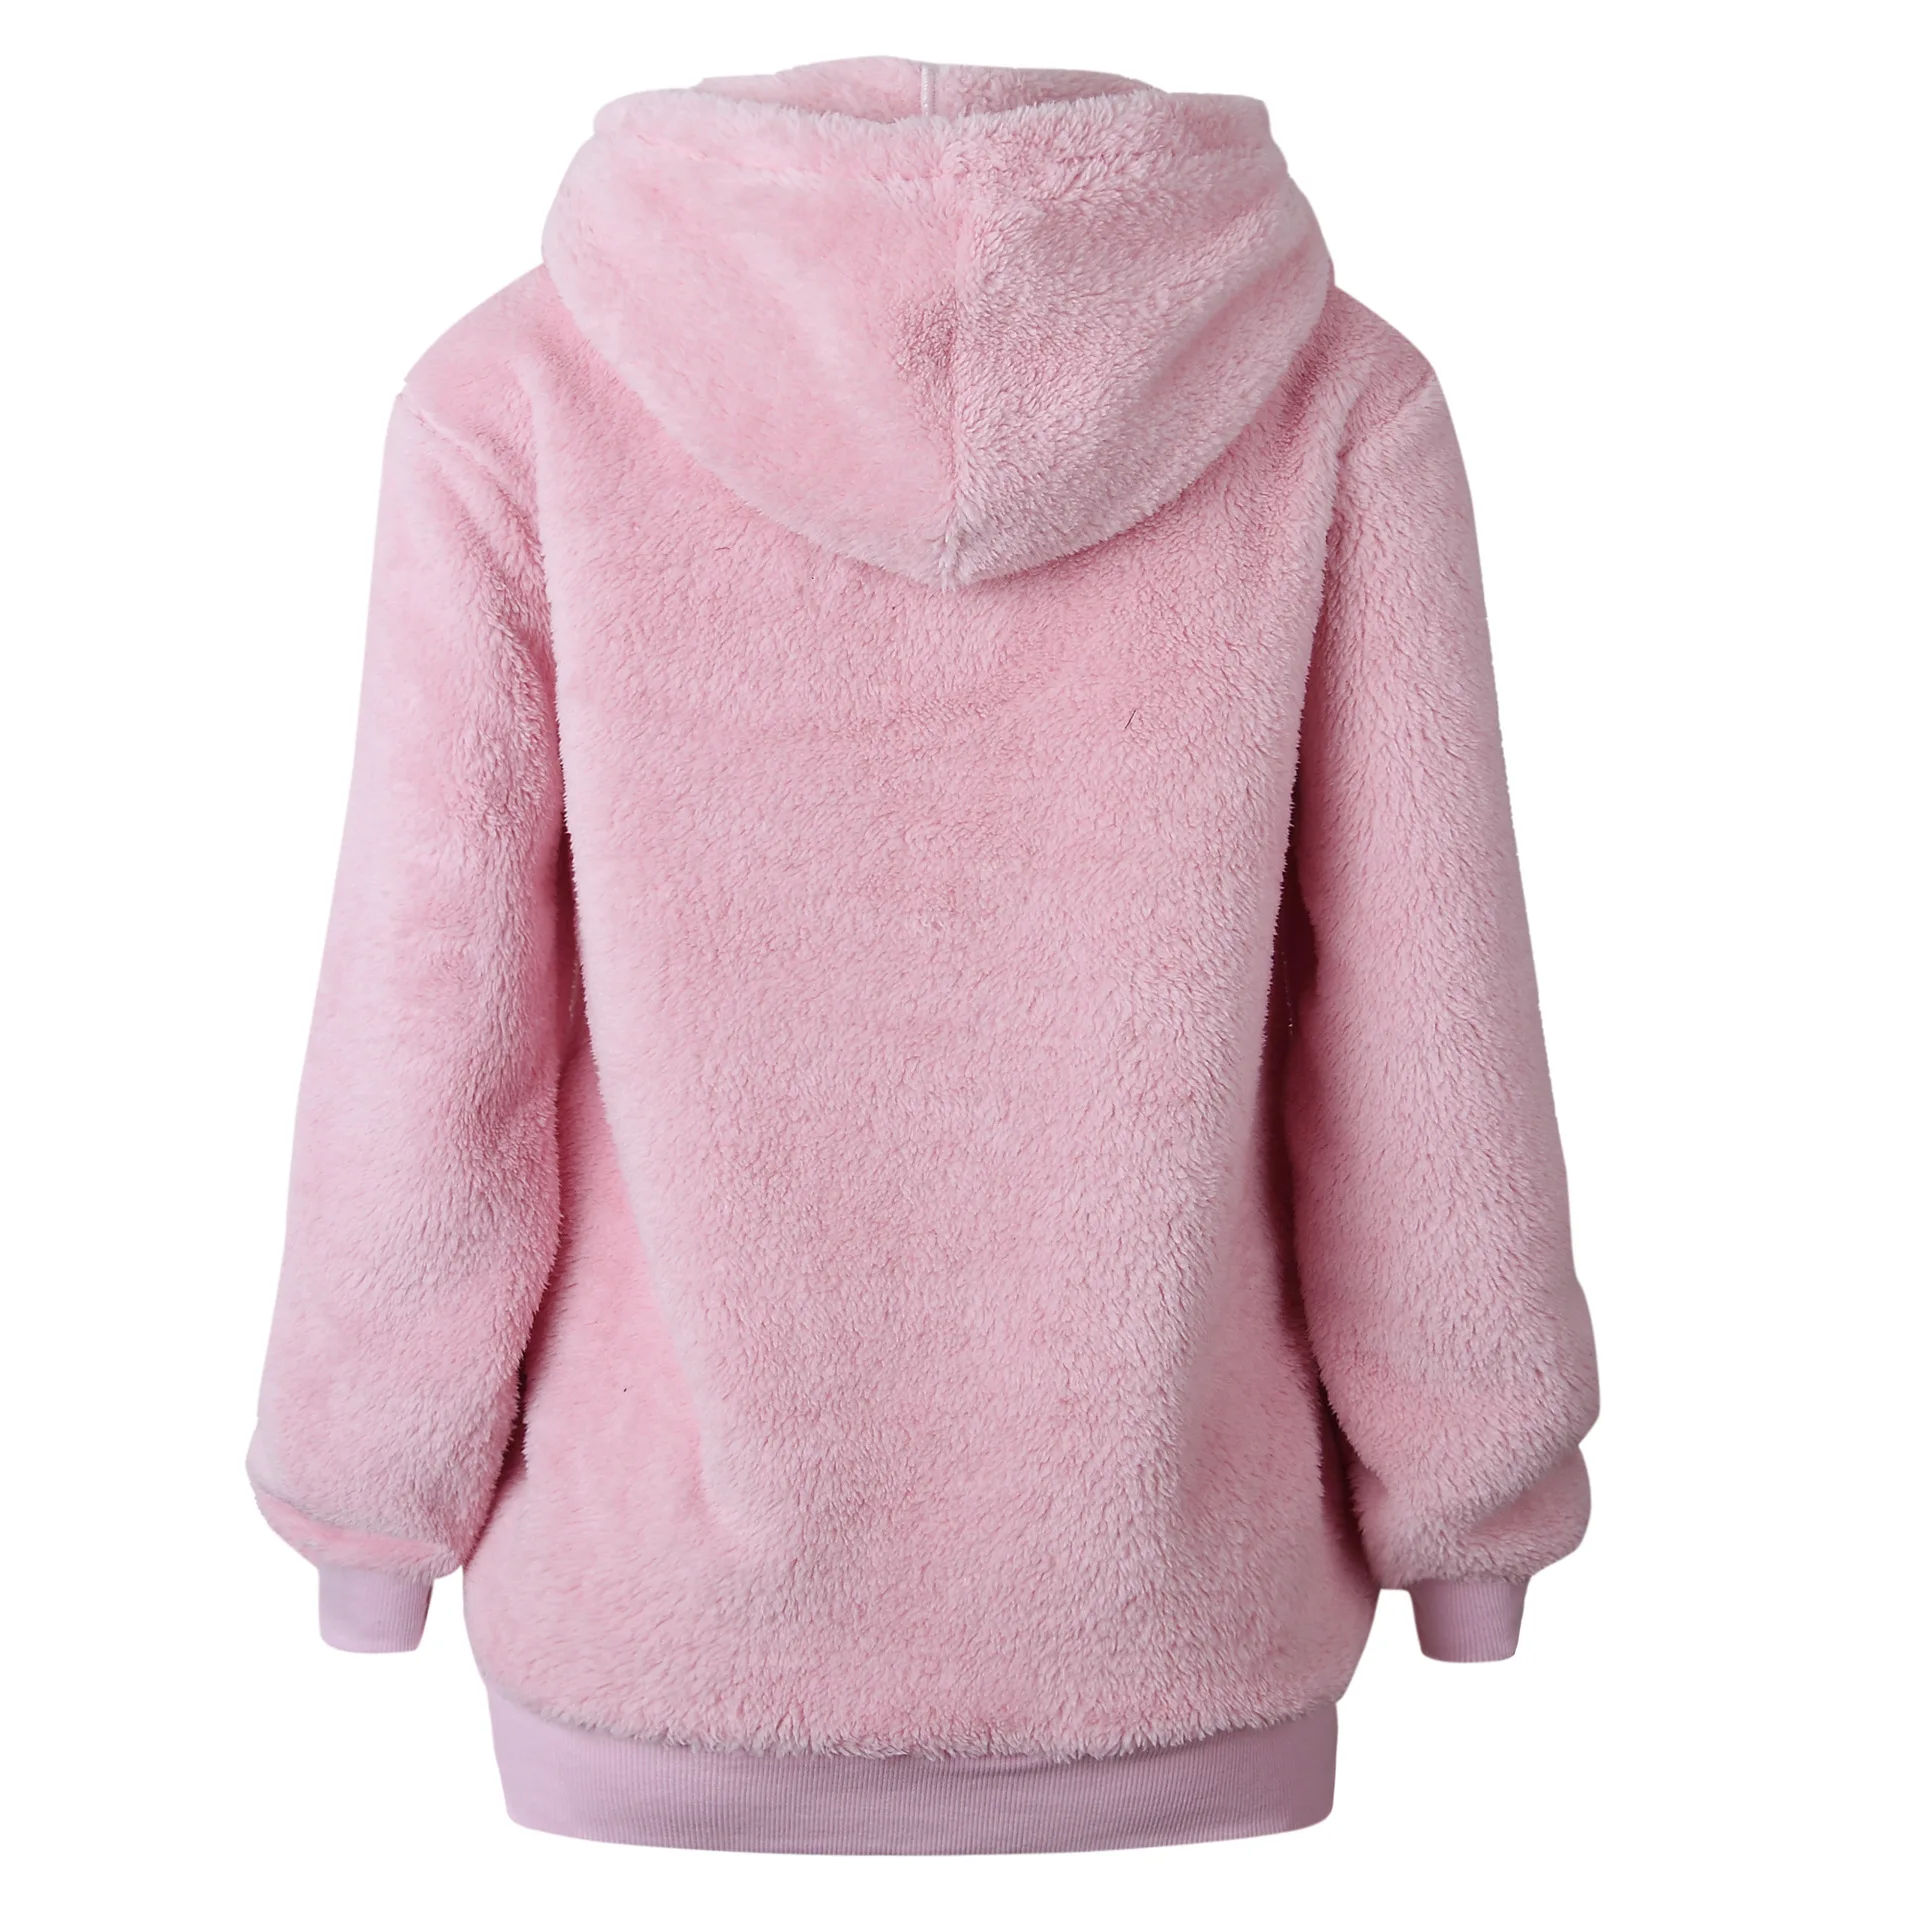 5XL размера плюс, флисовый Женский пуловер с капюшоном, женские свитера s,, зима-осень, свитер для женщин, Свитера с капюшоном, Pull Femme Hiver - Цвет: Розовый